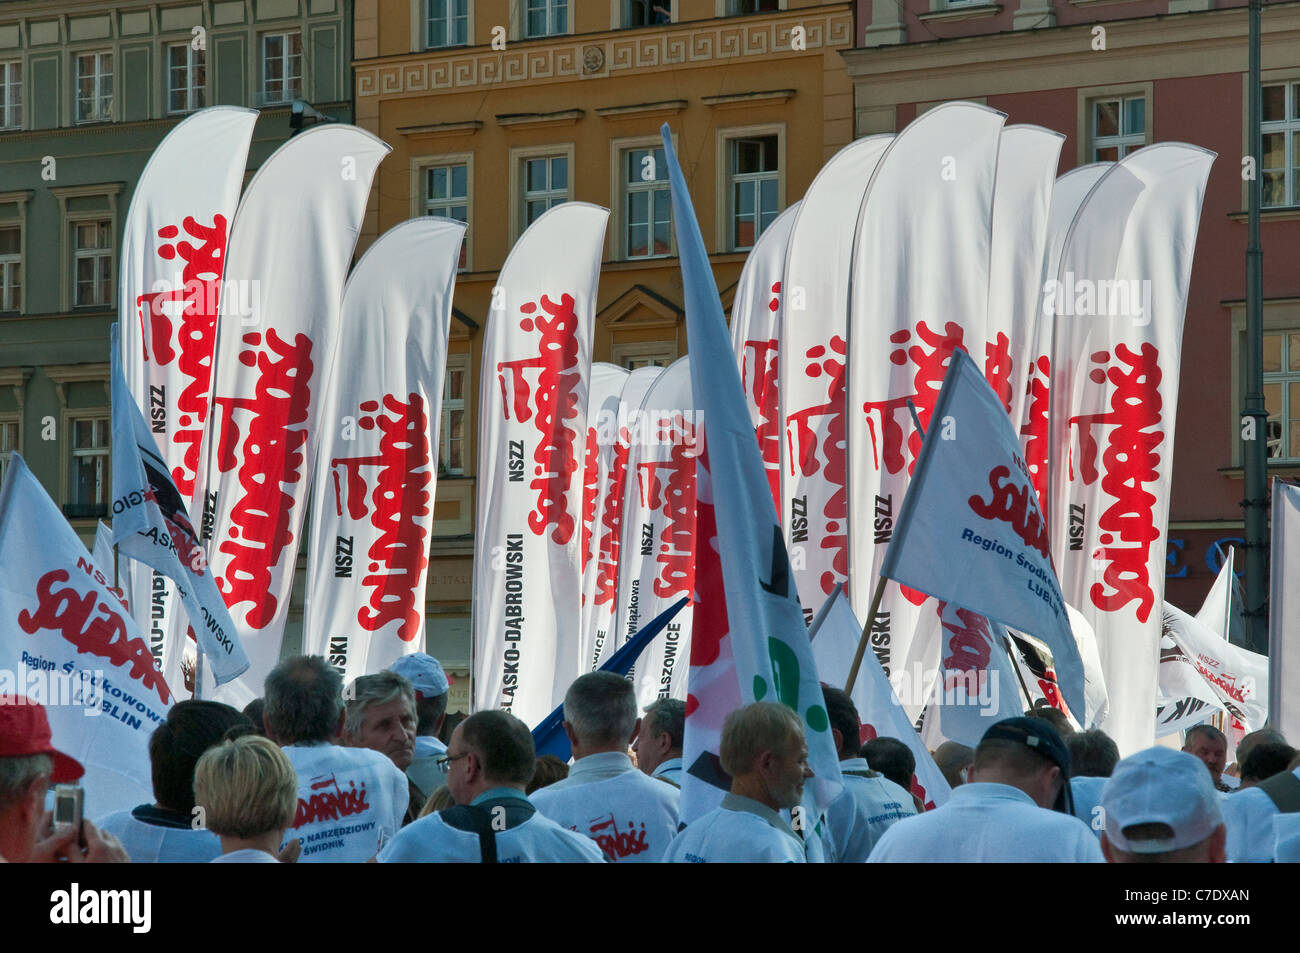 Solidarität-Banner, europäischen Gewerkschaften Demonstration während der Treffen der EU-Finanzminister am Sep 17, 2011 in Wroclaw/Breslau Polen Stockfoto